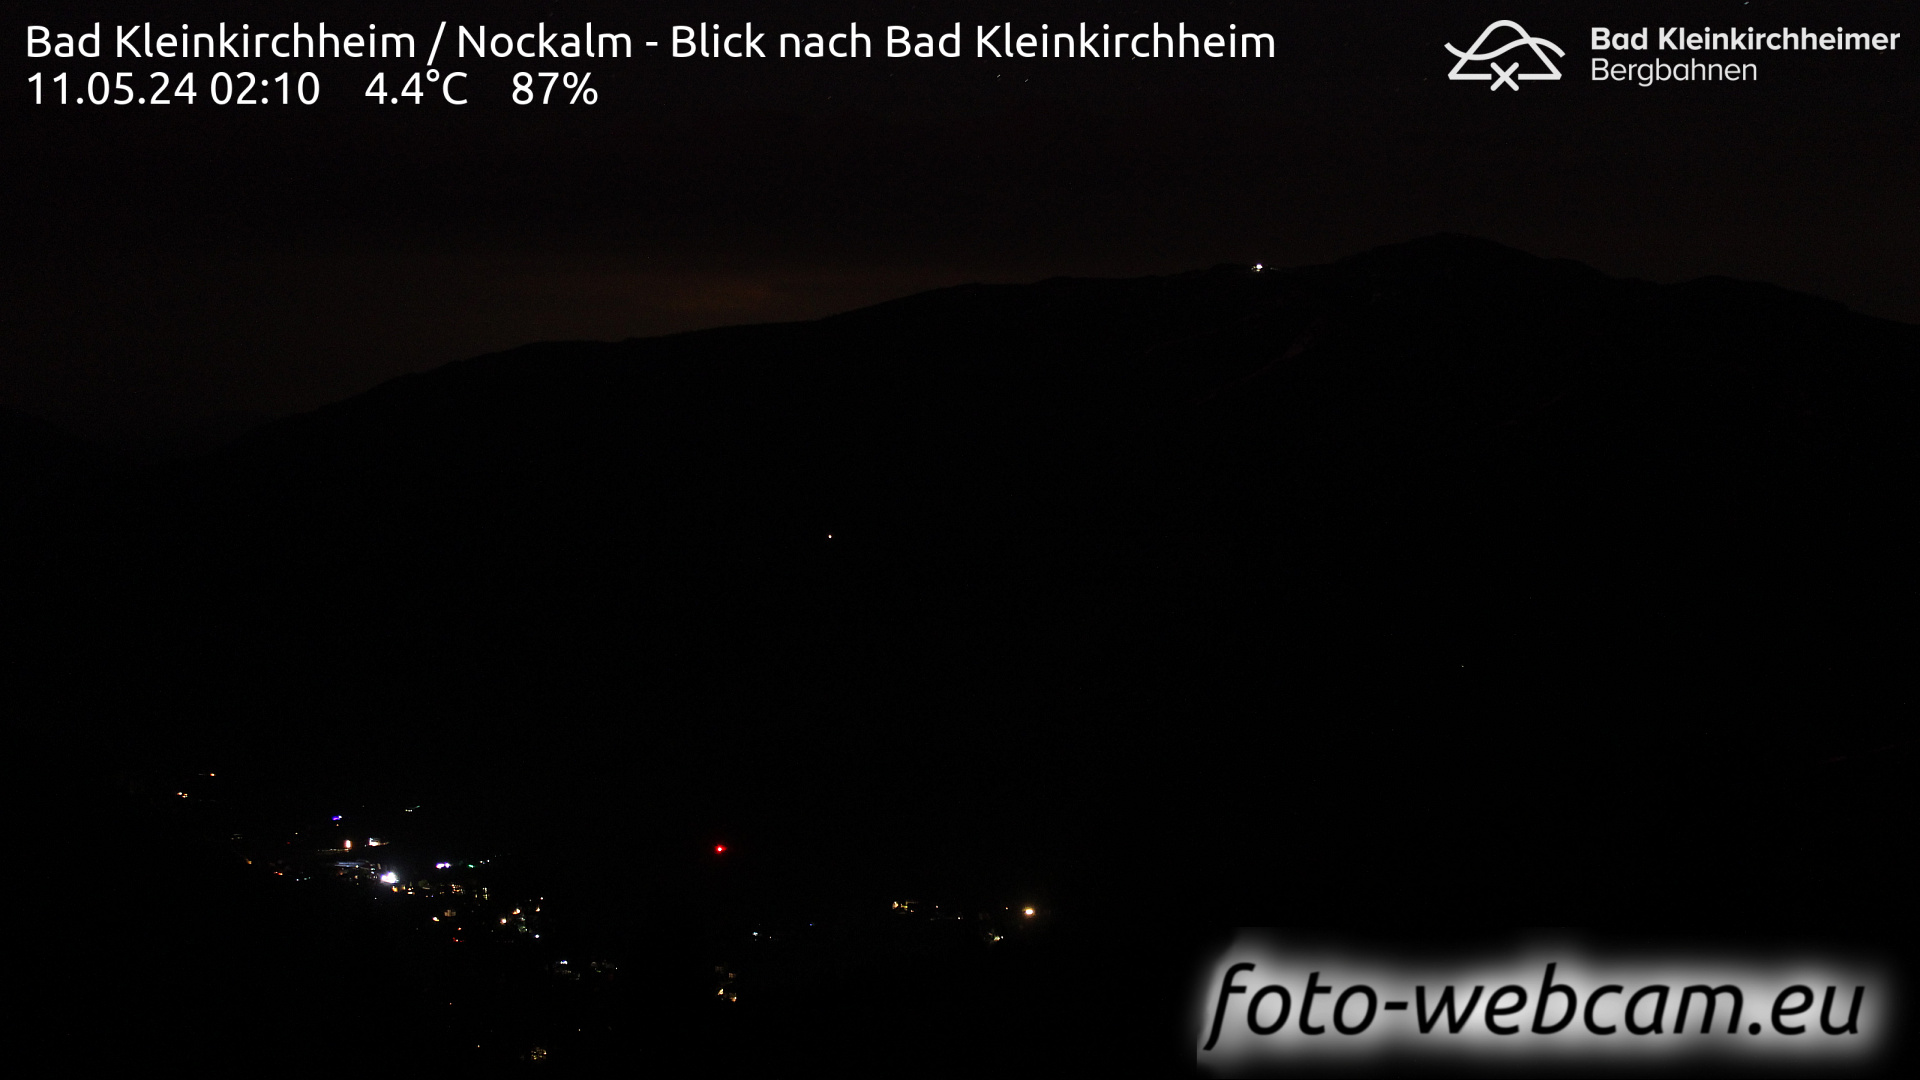 Bad Kleinkirchheim Fr. 02:17